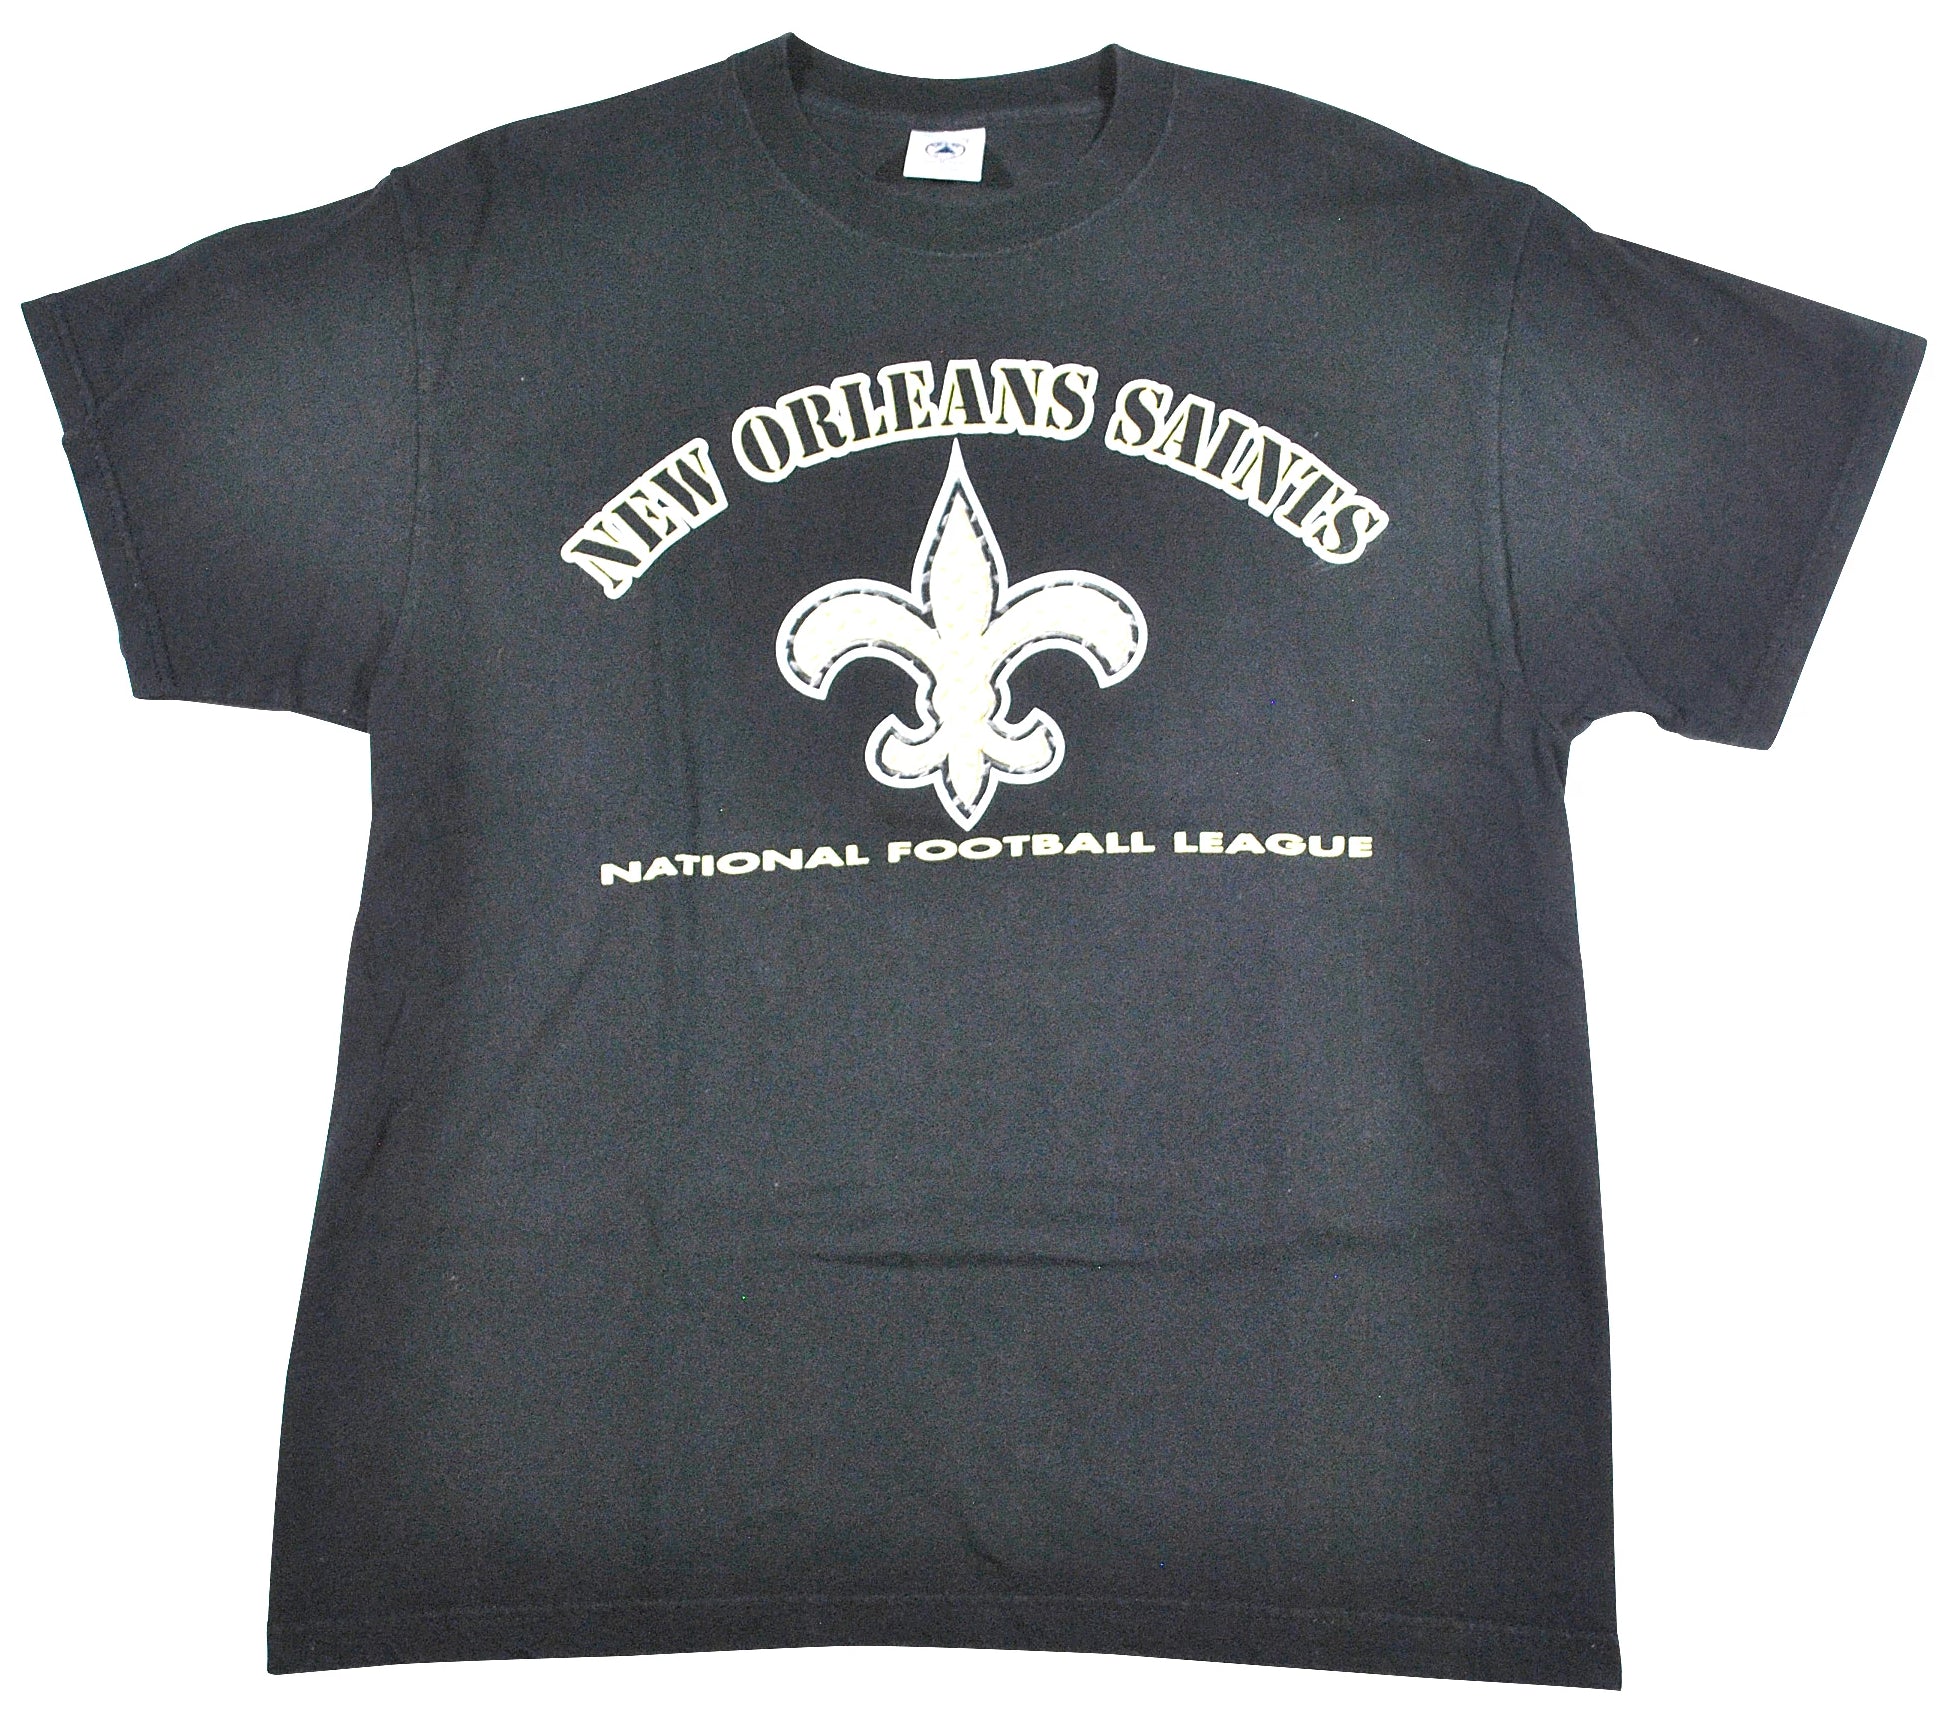 new orleans saints vintage shirt